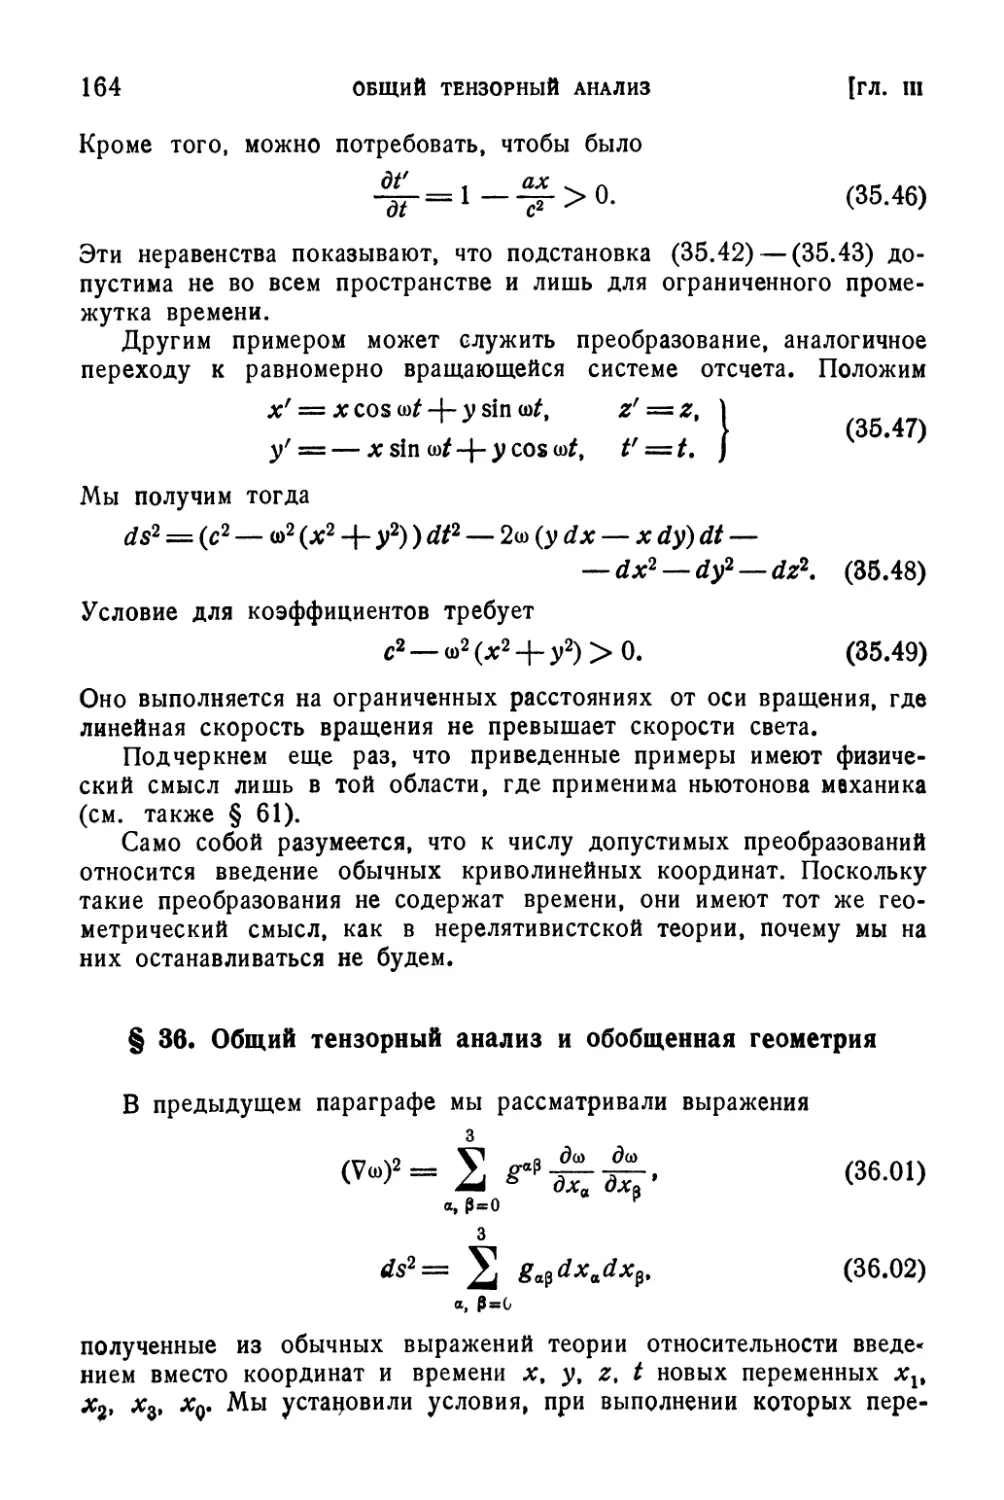 § 36. Общий тензорный анализ и обобщенная геометрия